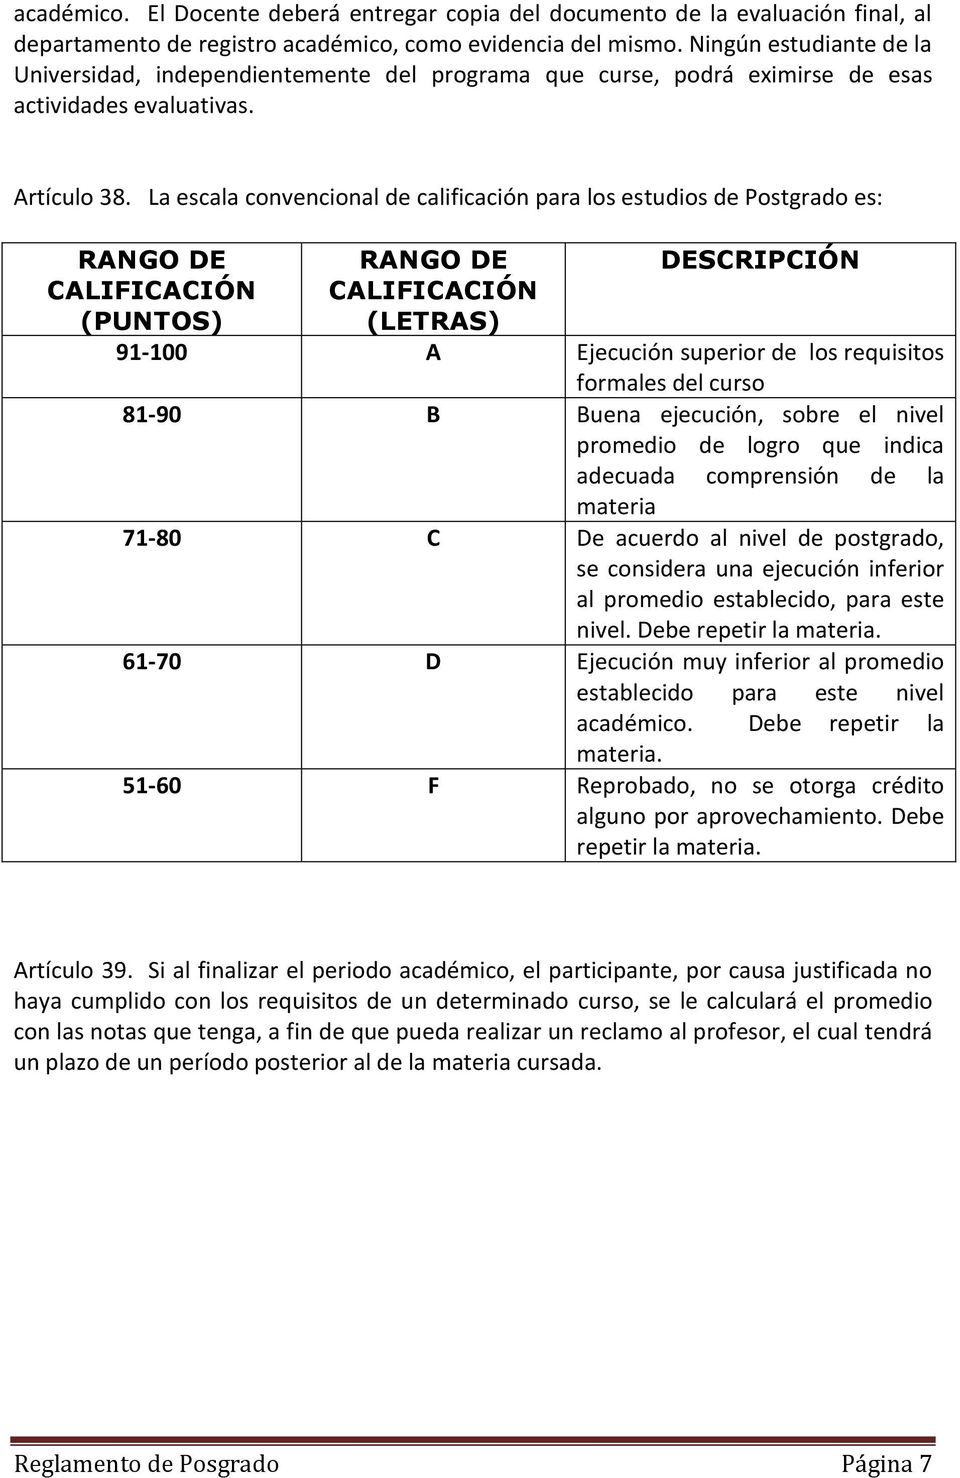 La escala convencional de calificación para los estudios de Postgrado es: RANGO DE CALIFICACIÓN (PUNTOS) RANGO DE CALIFICACIÓN (LETRAS) DESCRIPCIÓN 91-100 A Ejecución superior de los requisitos